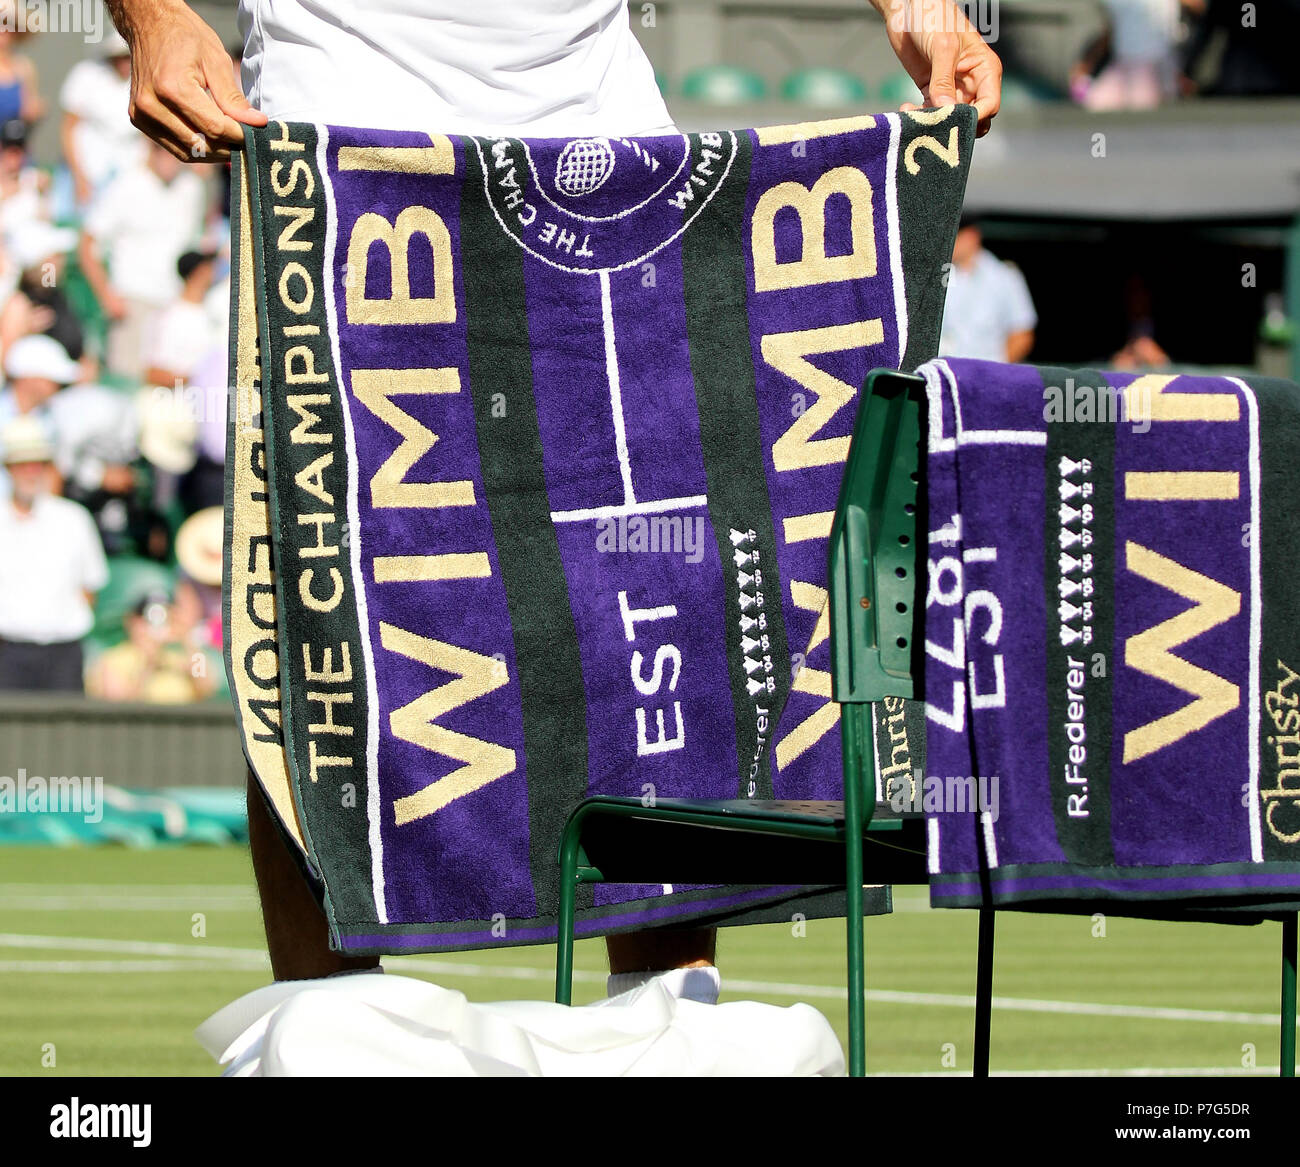 ROGER FEDERER , Serviette en édition limitée, le tournoi de Wimbledon 2018, le tournoi de Wimbledon 2018, le All England Tennis Club, 2018 Banque D'Images